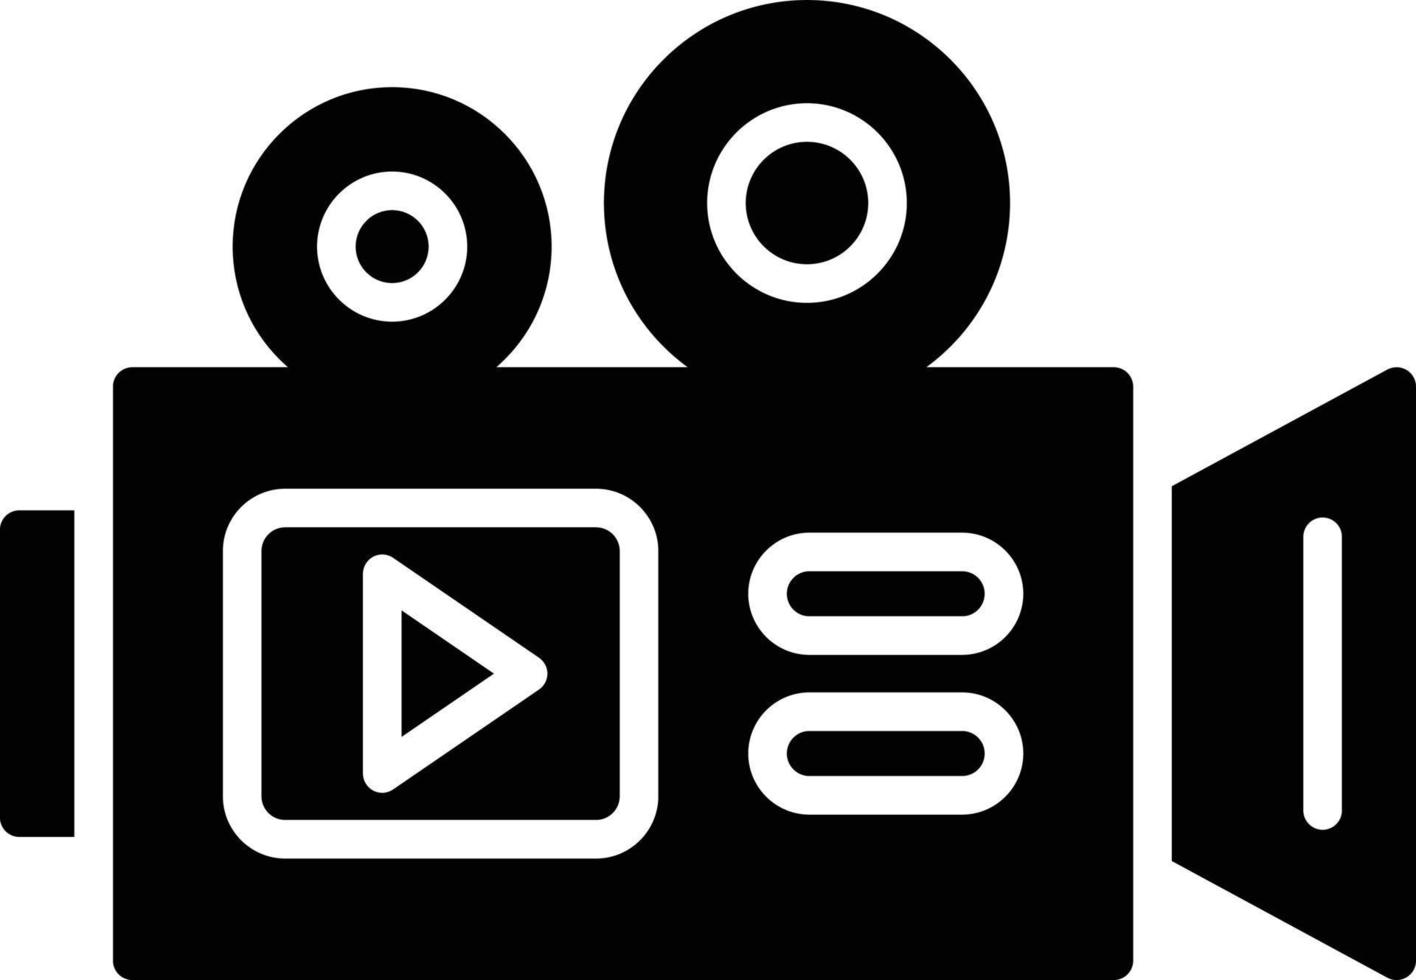 icona del glifo con videocamera vettore